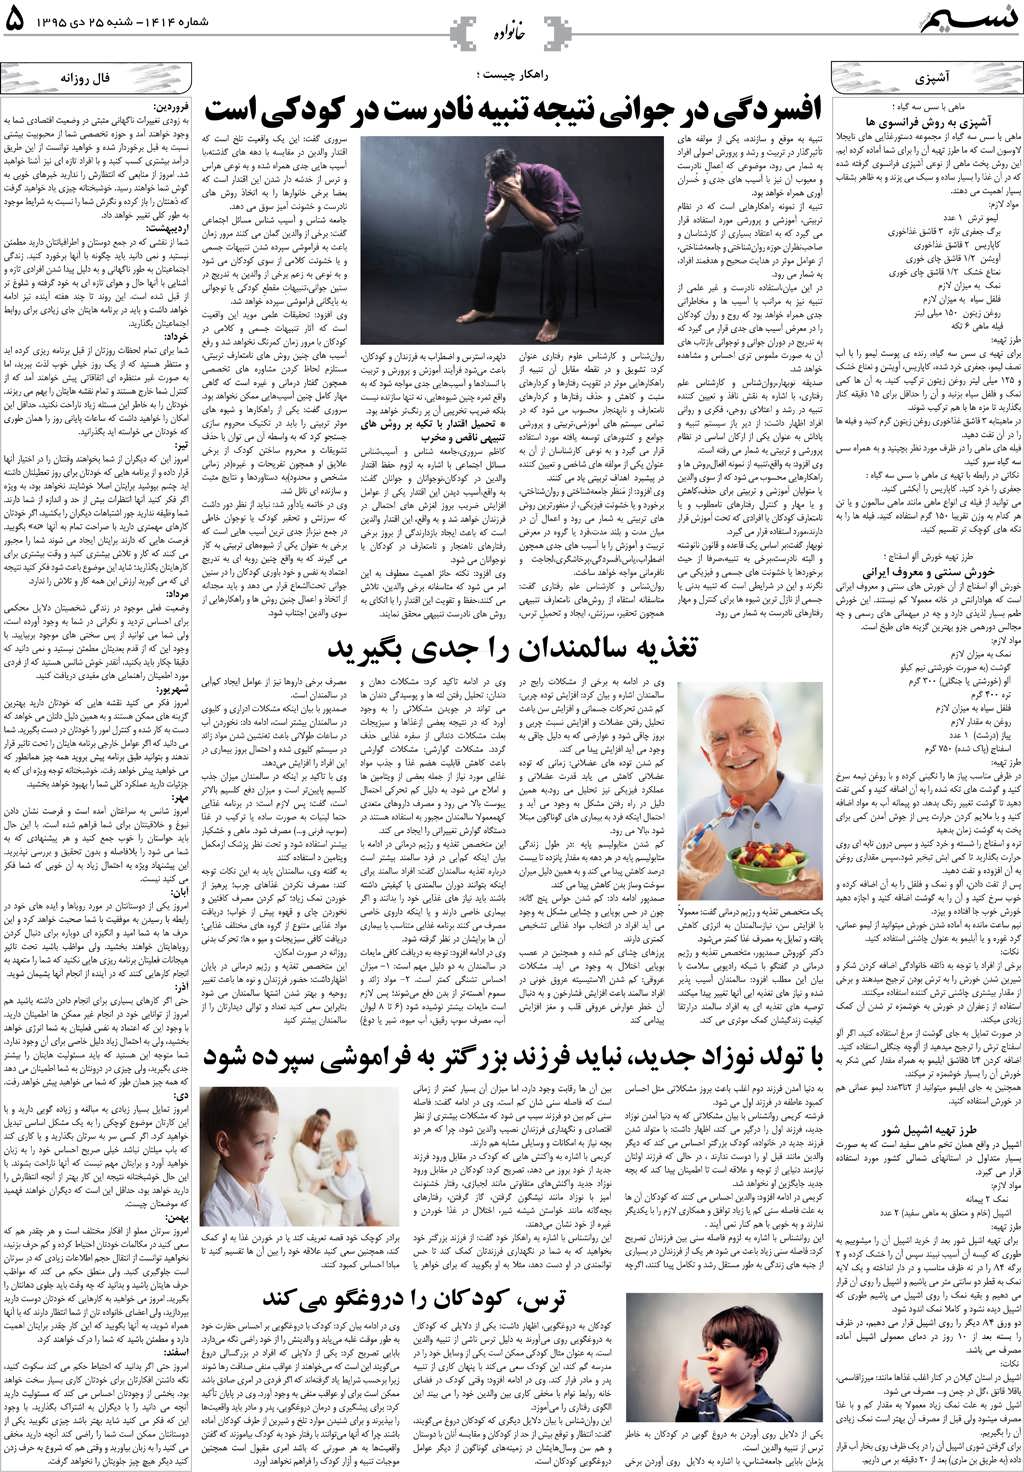 صفحه خانواده روزنامه نسیم شماره 1414